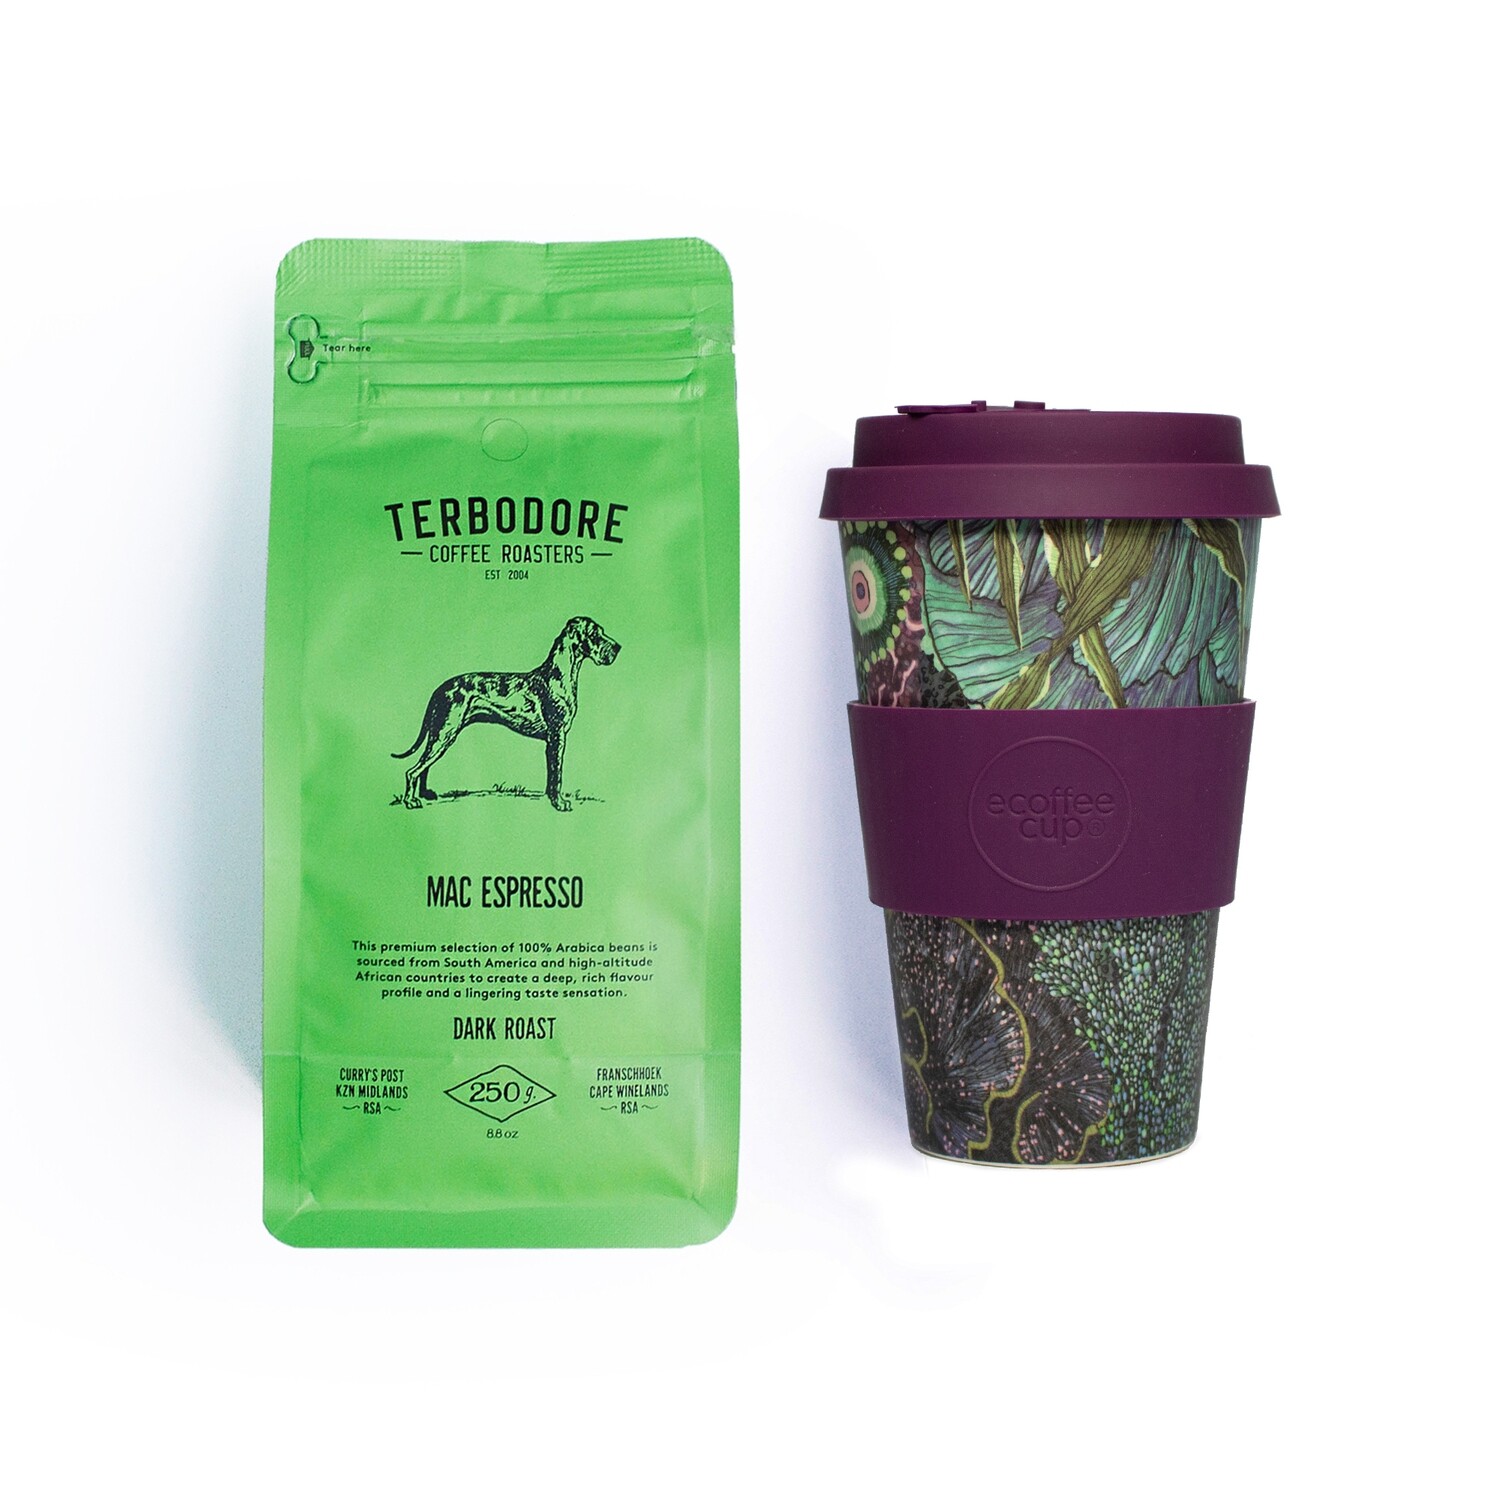 Ocean Espresso - Terbodore Mac Espresso Coffee & Ecoffee Cup Gift set